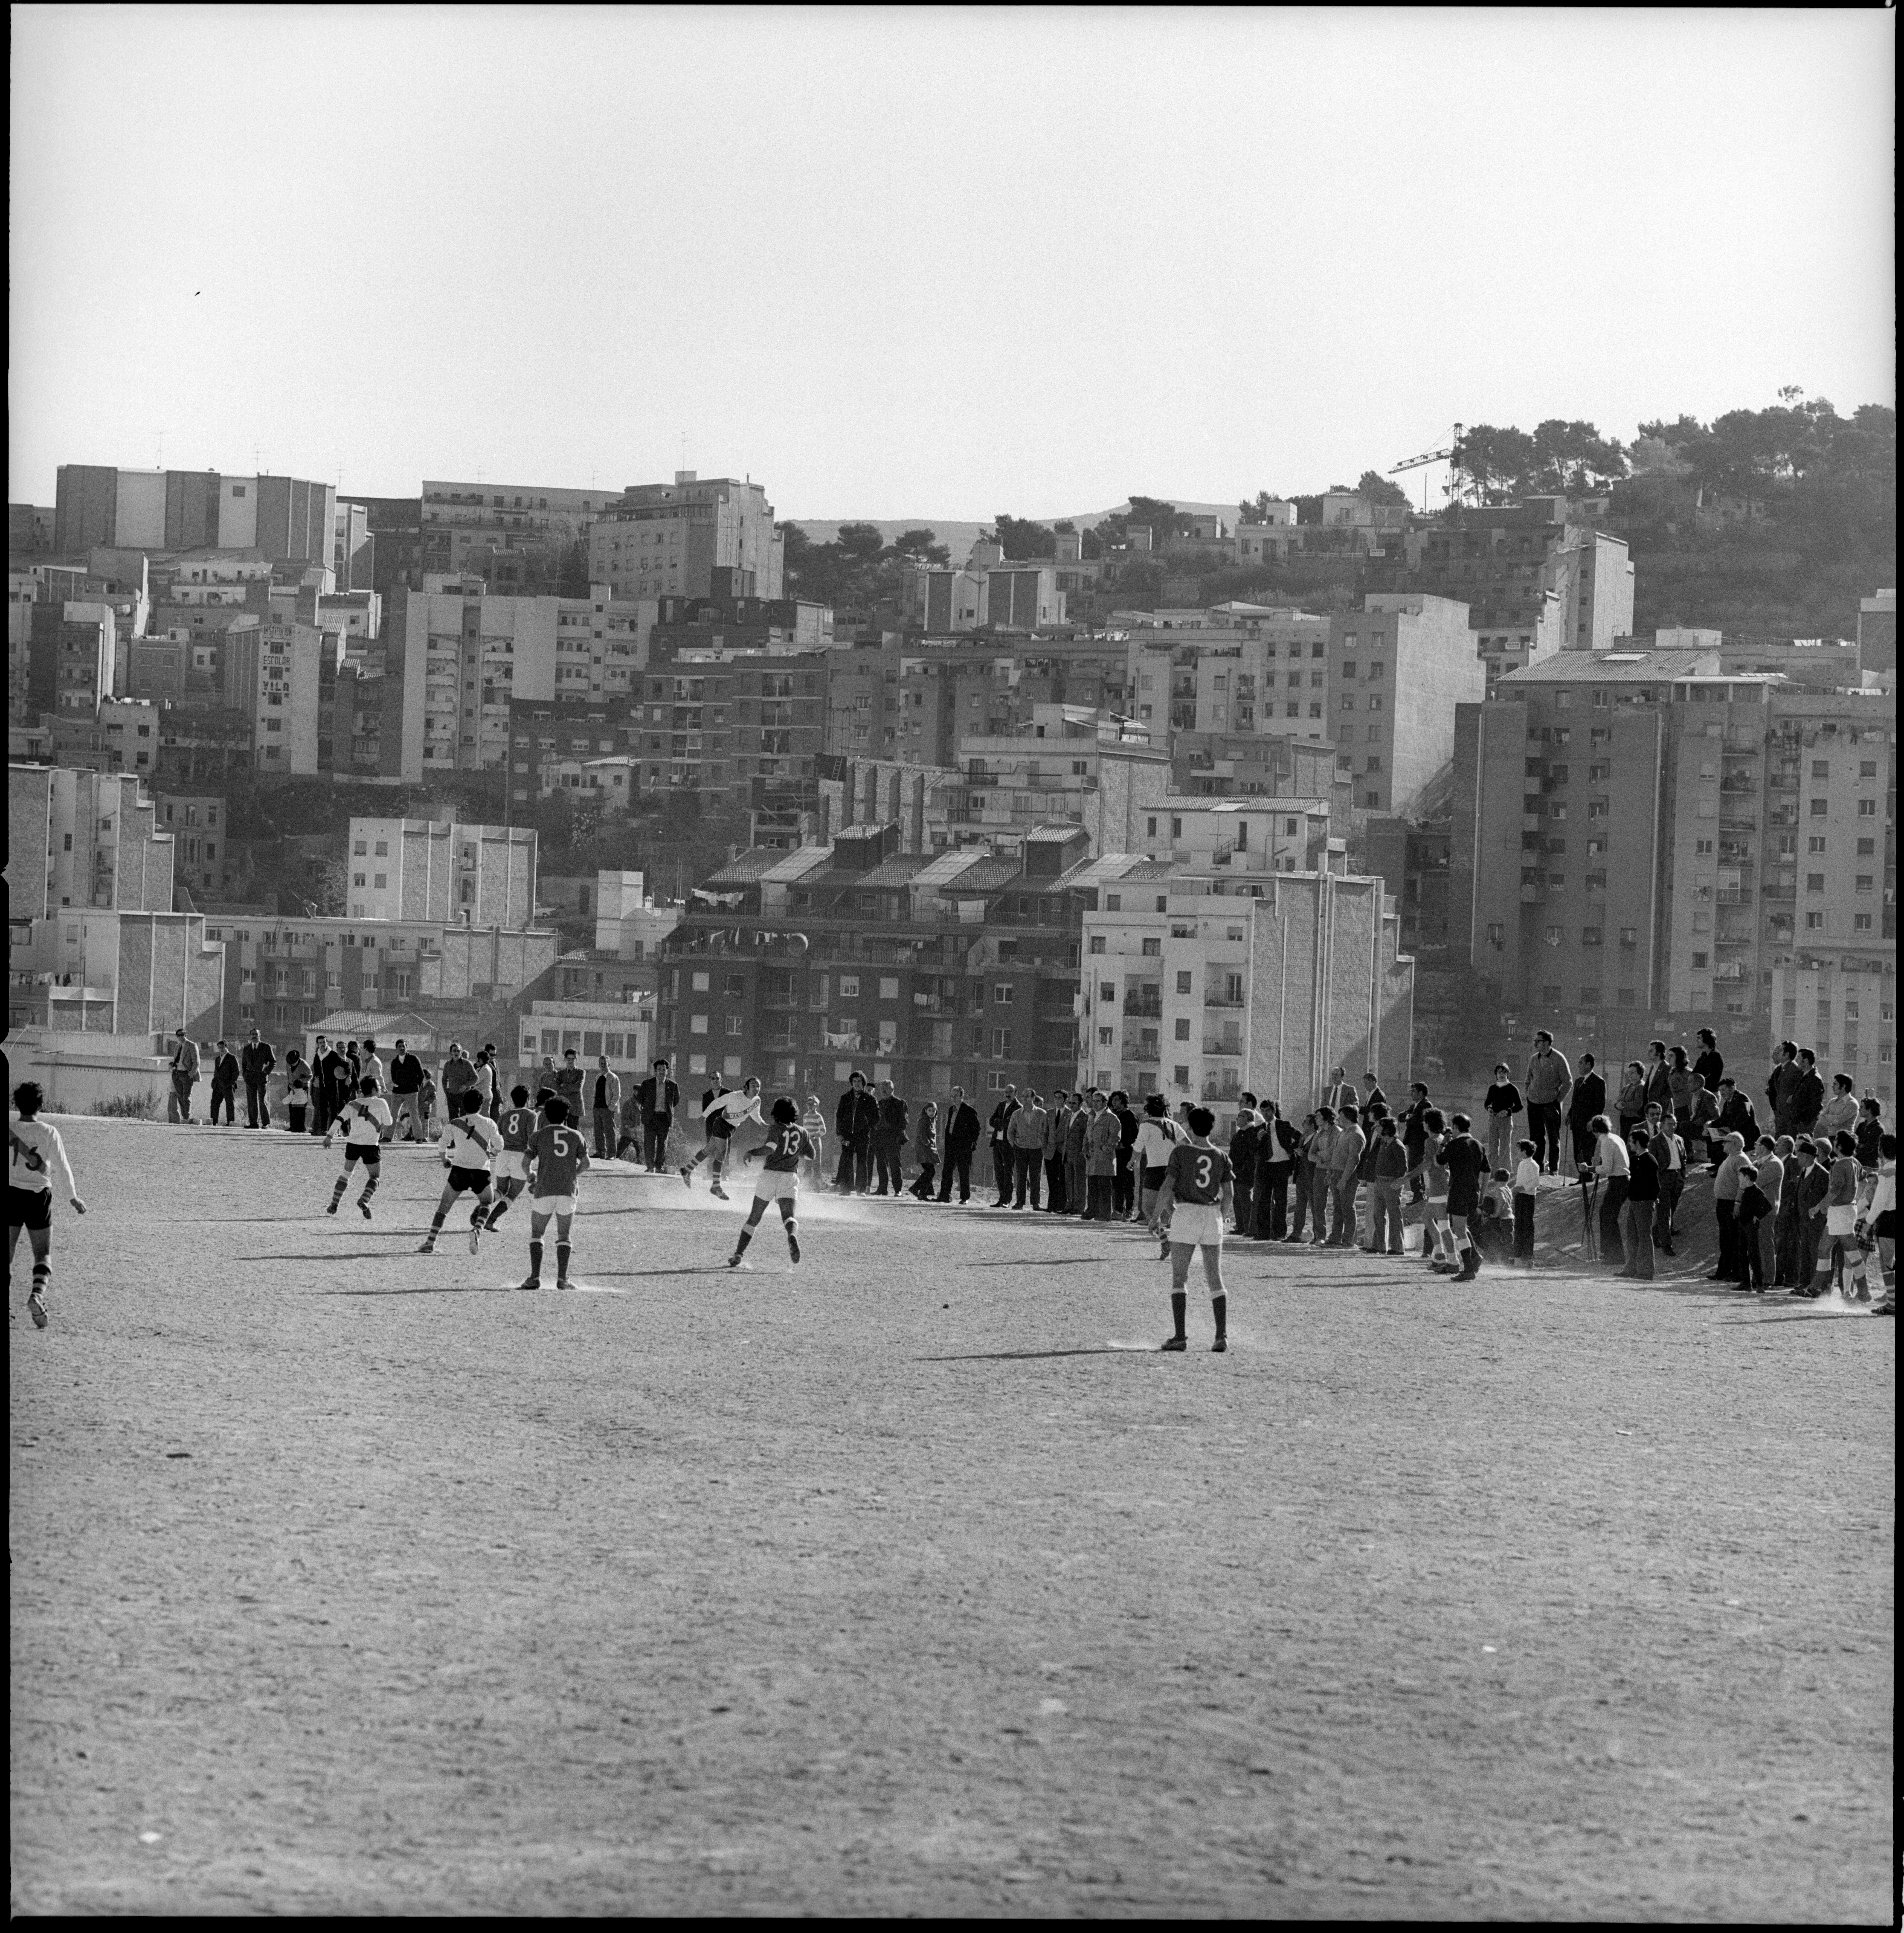 Partido en el barrio de La Teixonera de Barcelona, en la década de 1970.